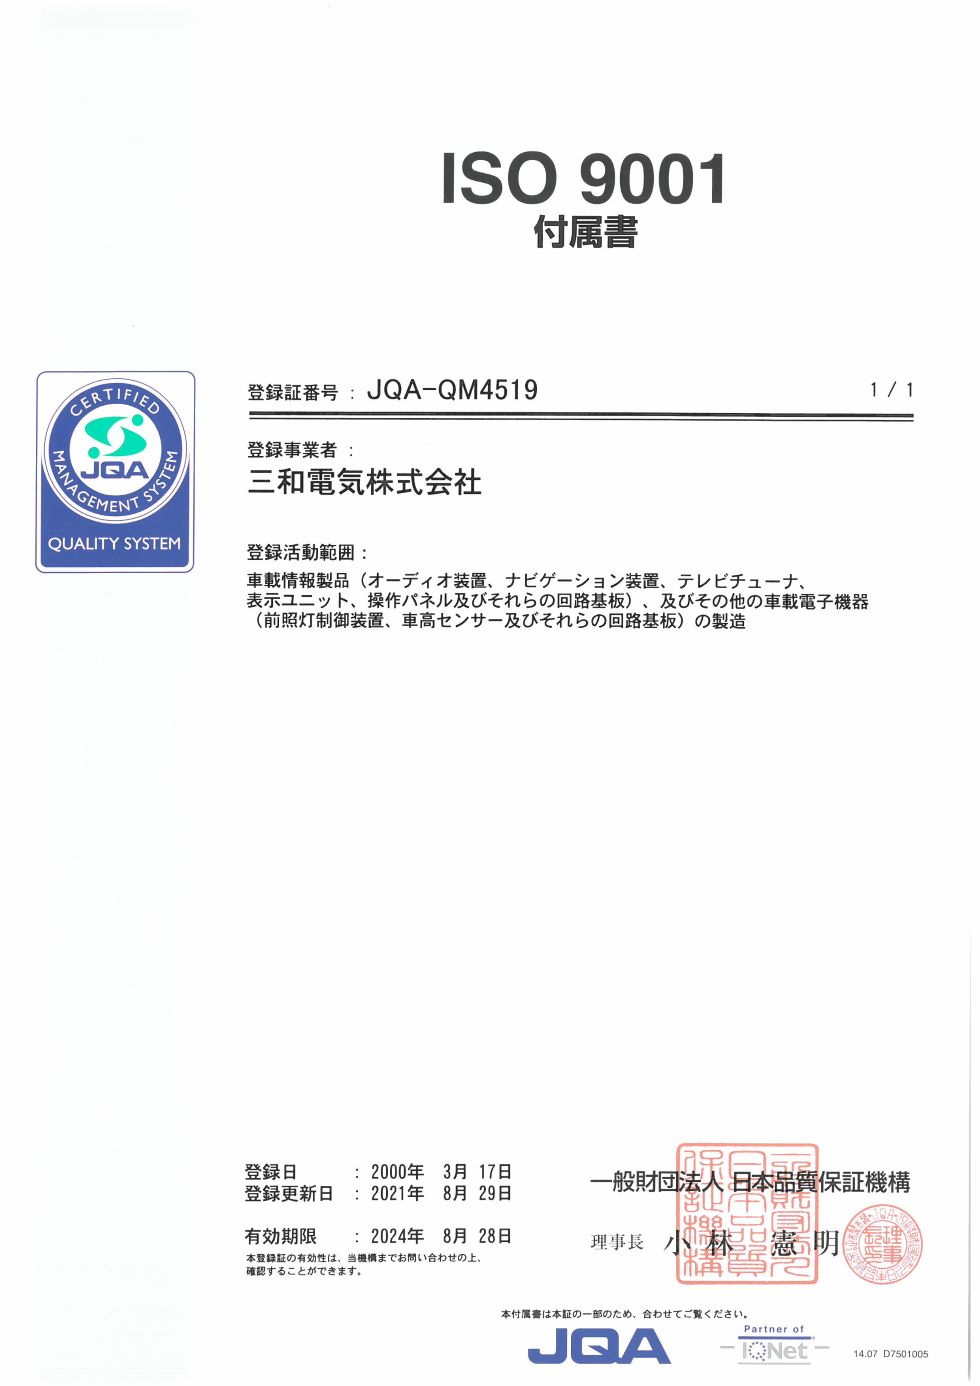 ISO9001の付属書